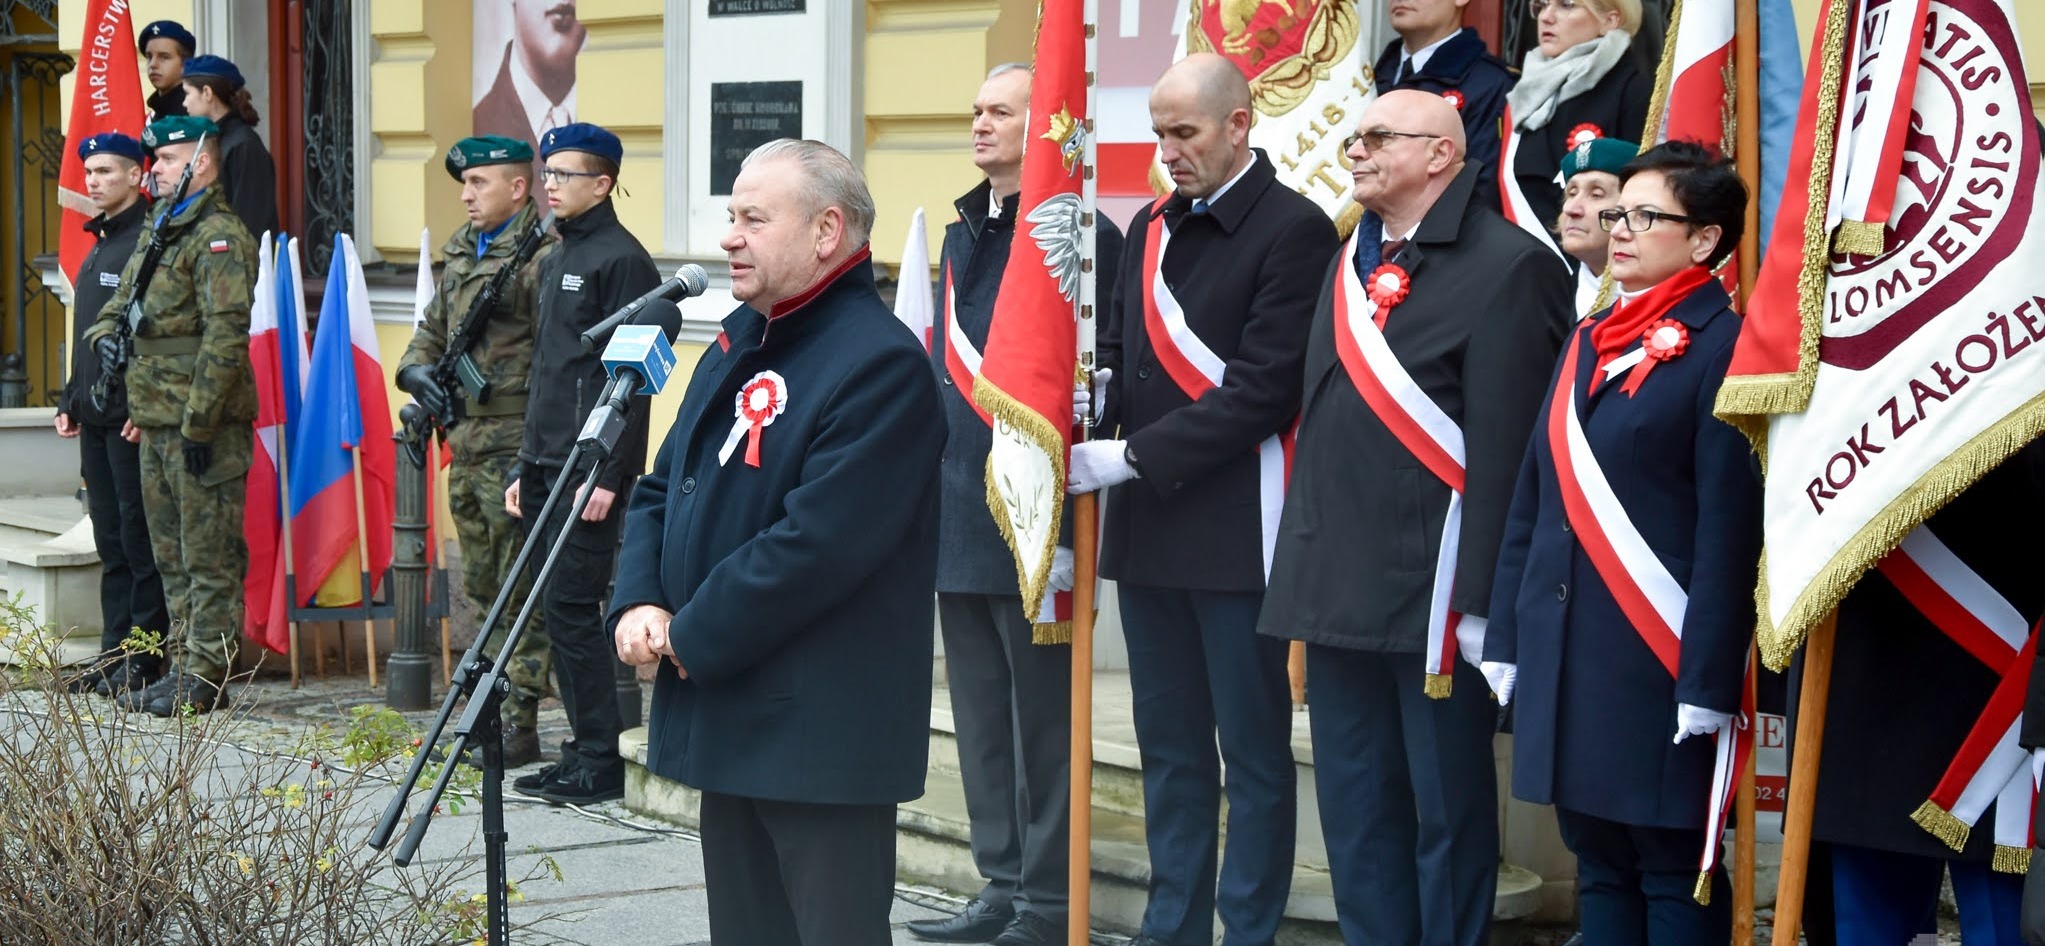 Wicemarszałek Marek Olbryś przemawia do mikrofonu na tle osób trzymających sztandar